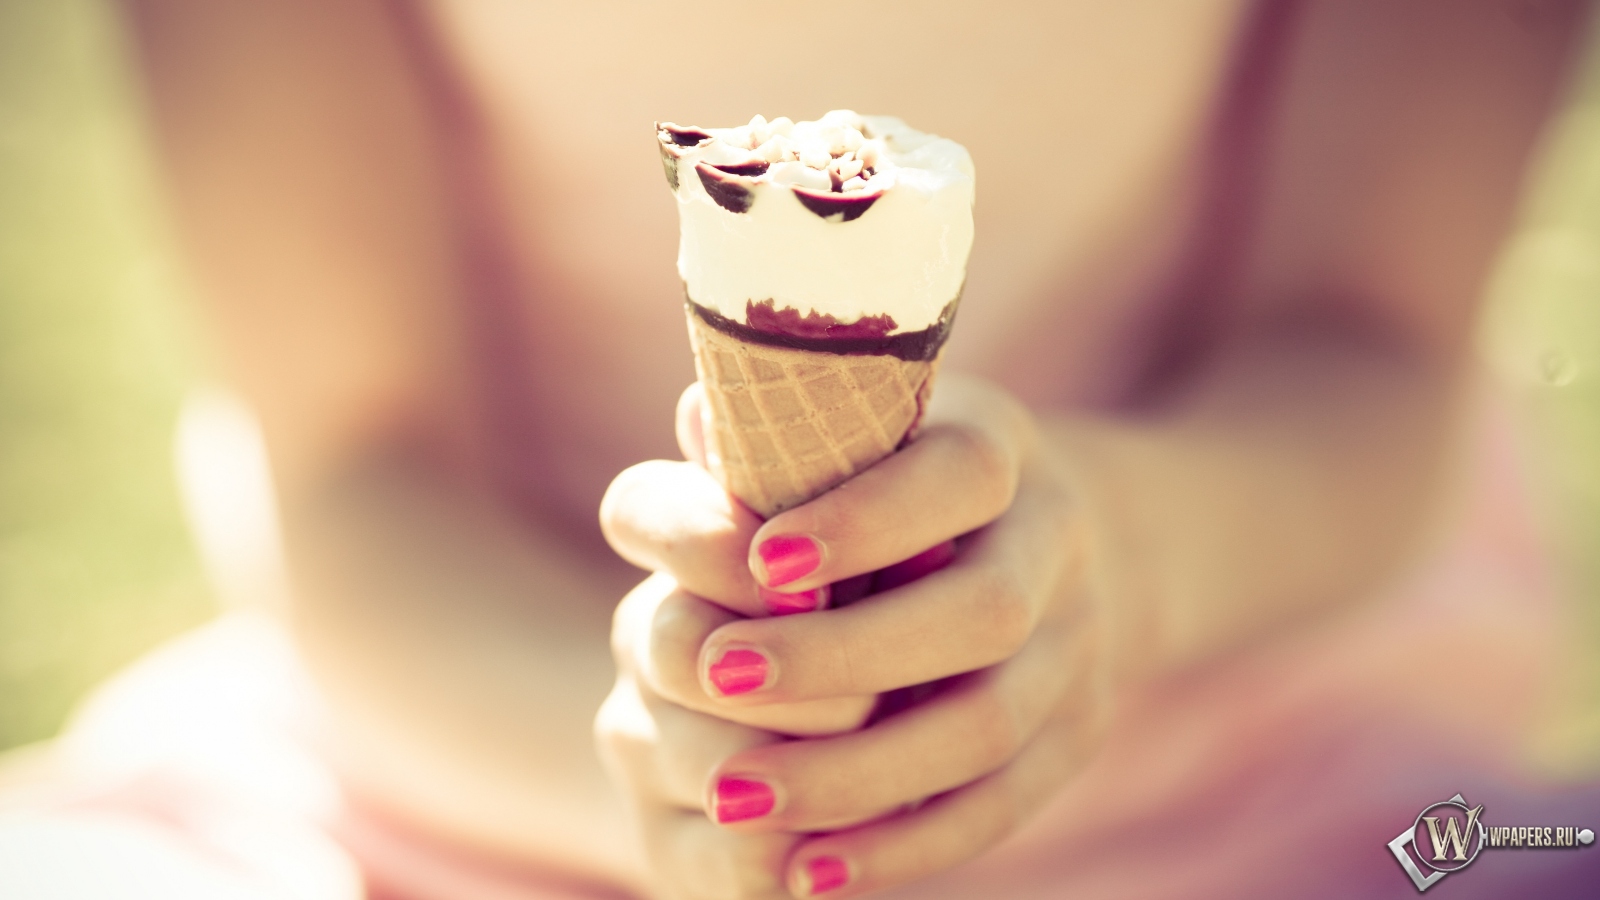 Шоколадное мороженое 1600x900